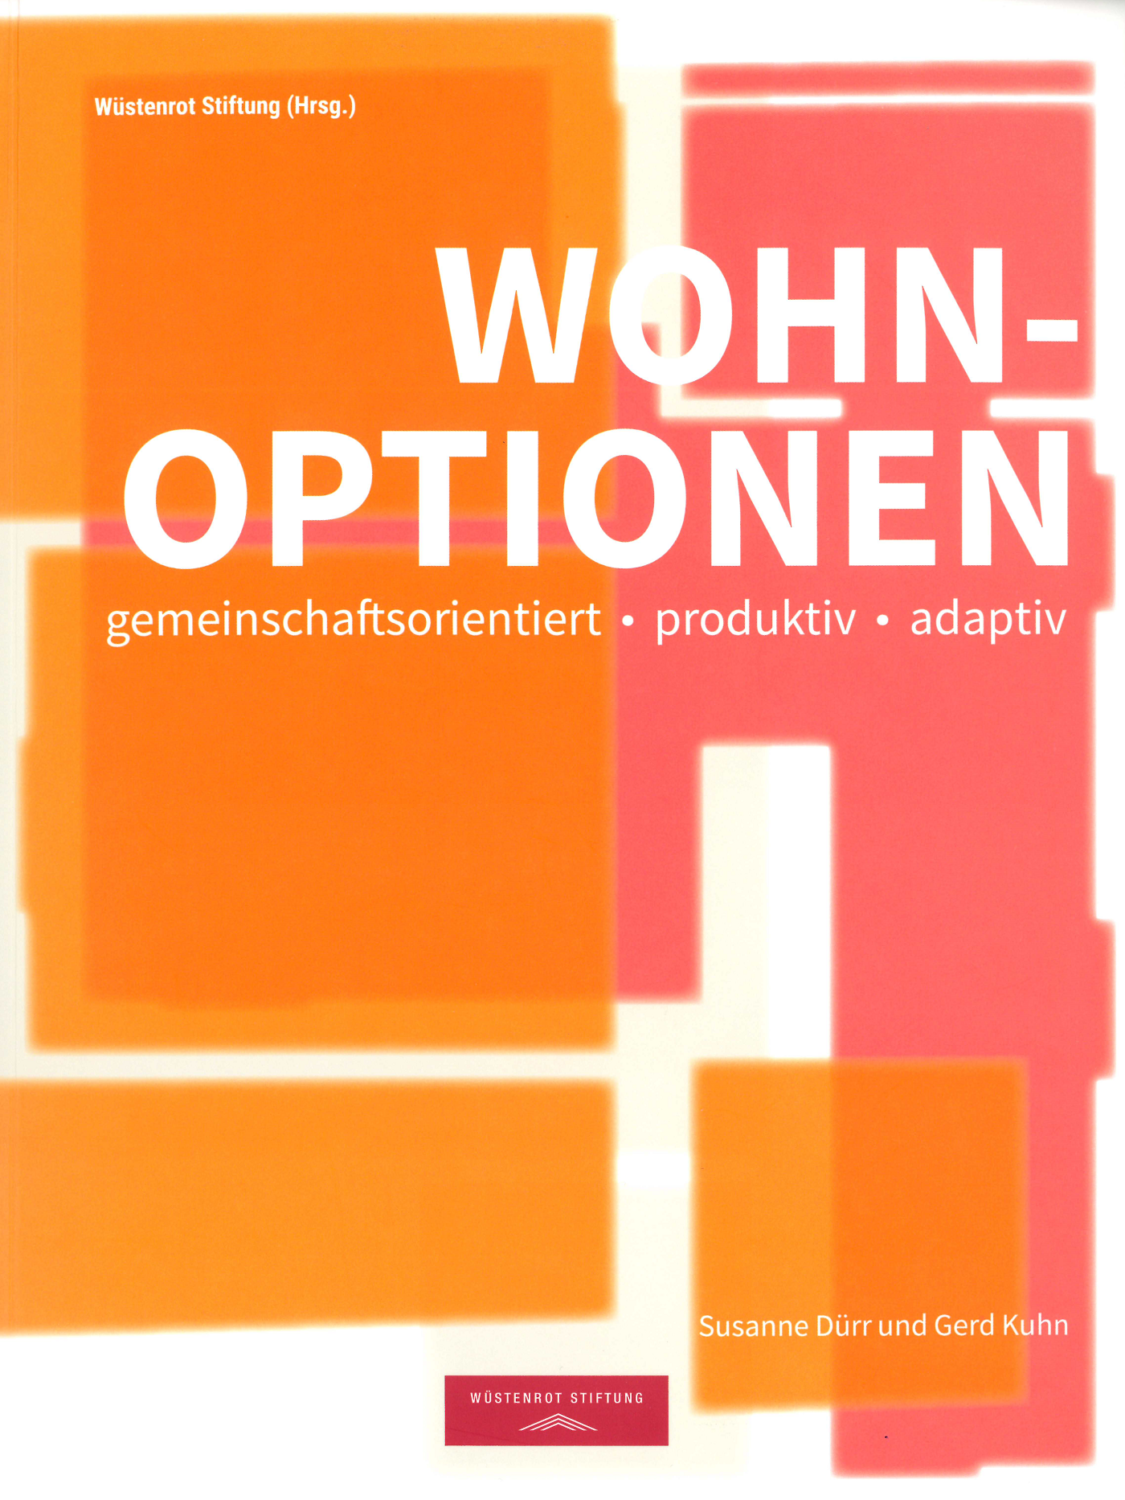 Wüstenrot Stiftung (Hrsg.): Wohnoptionen. Gemeinschaftsorientiert – Produktiv – Adaptiv